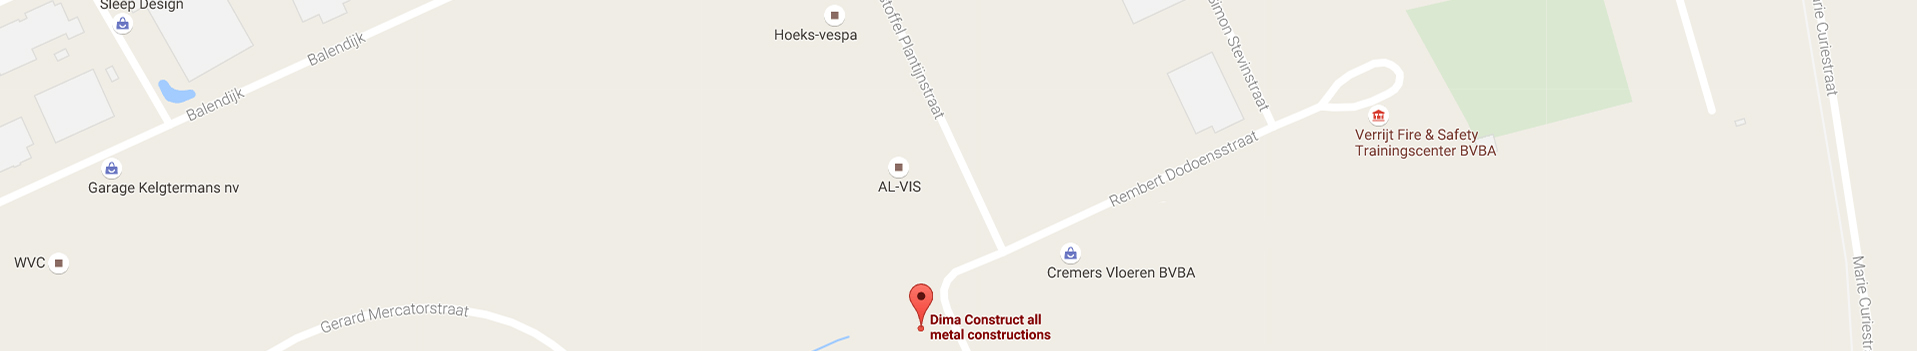 Locatie in Google Maps van Dima Construct Lommel